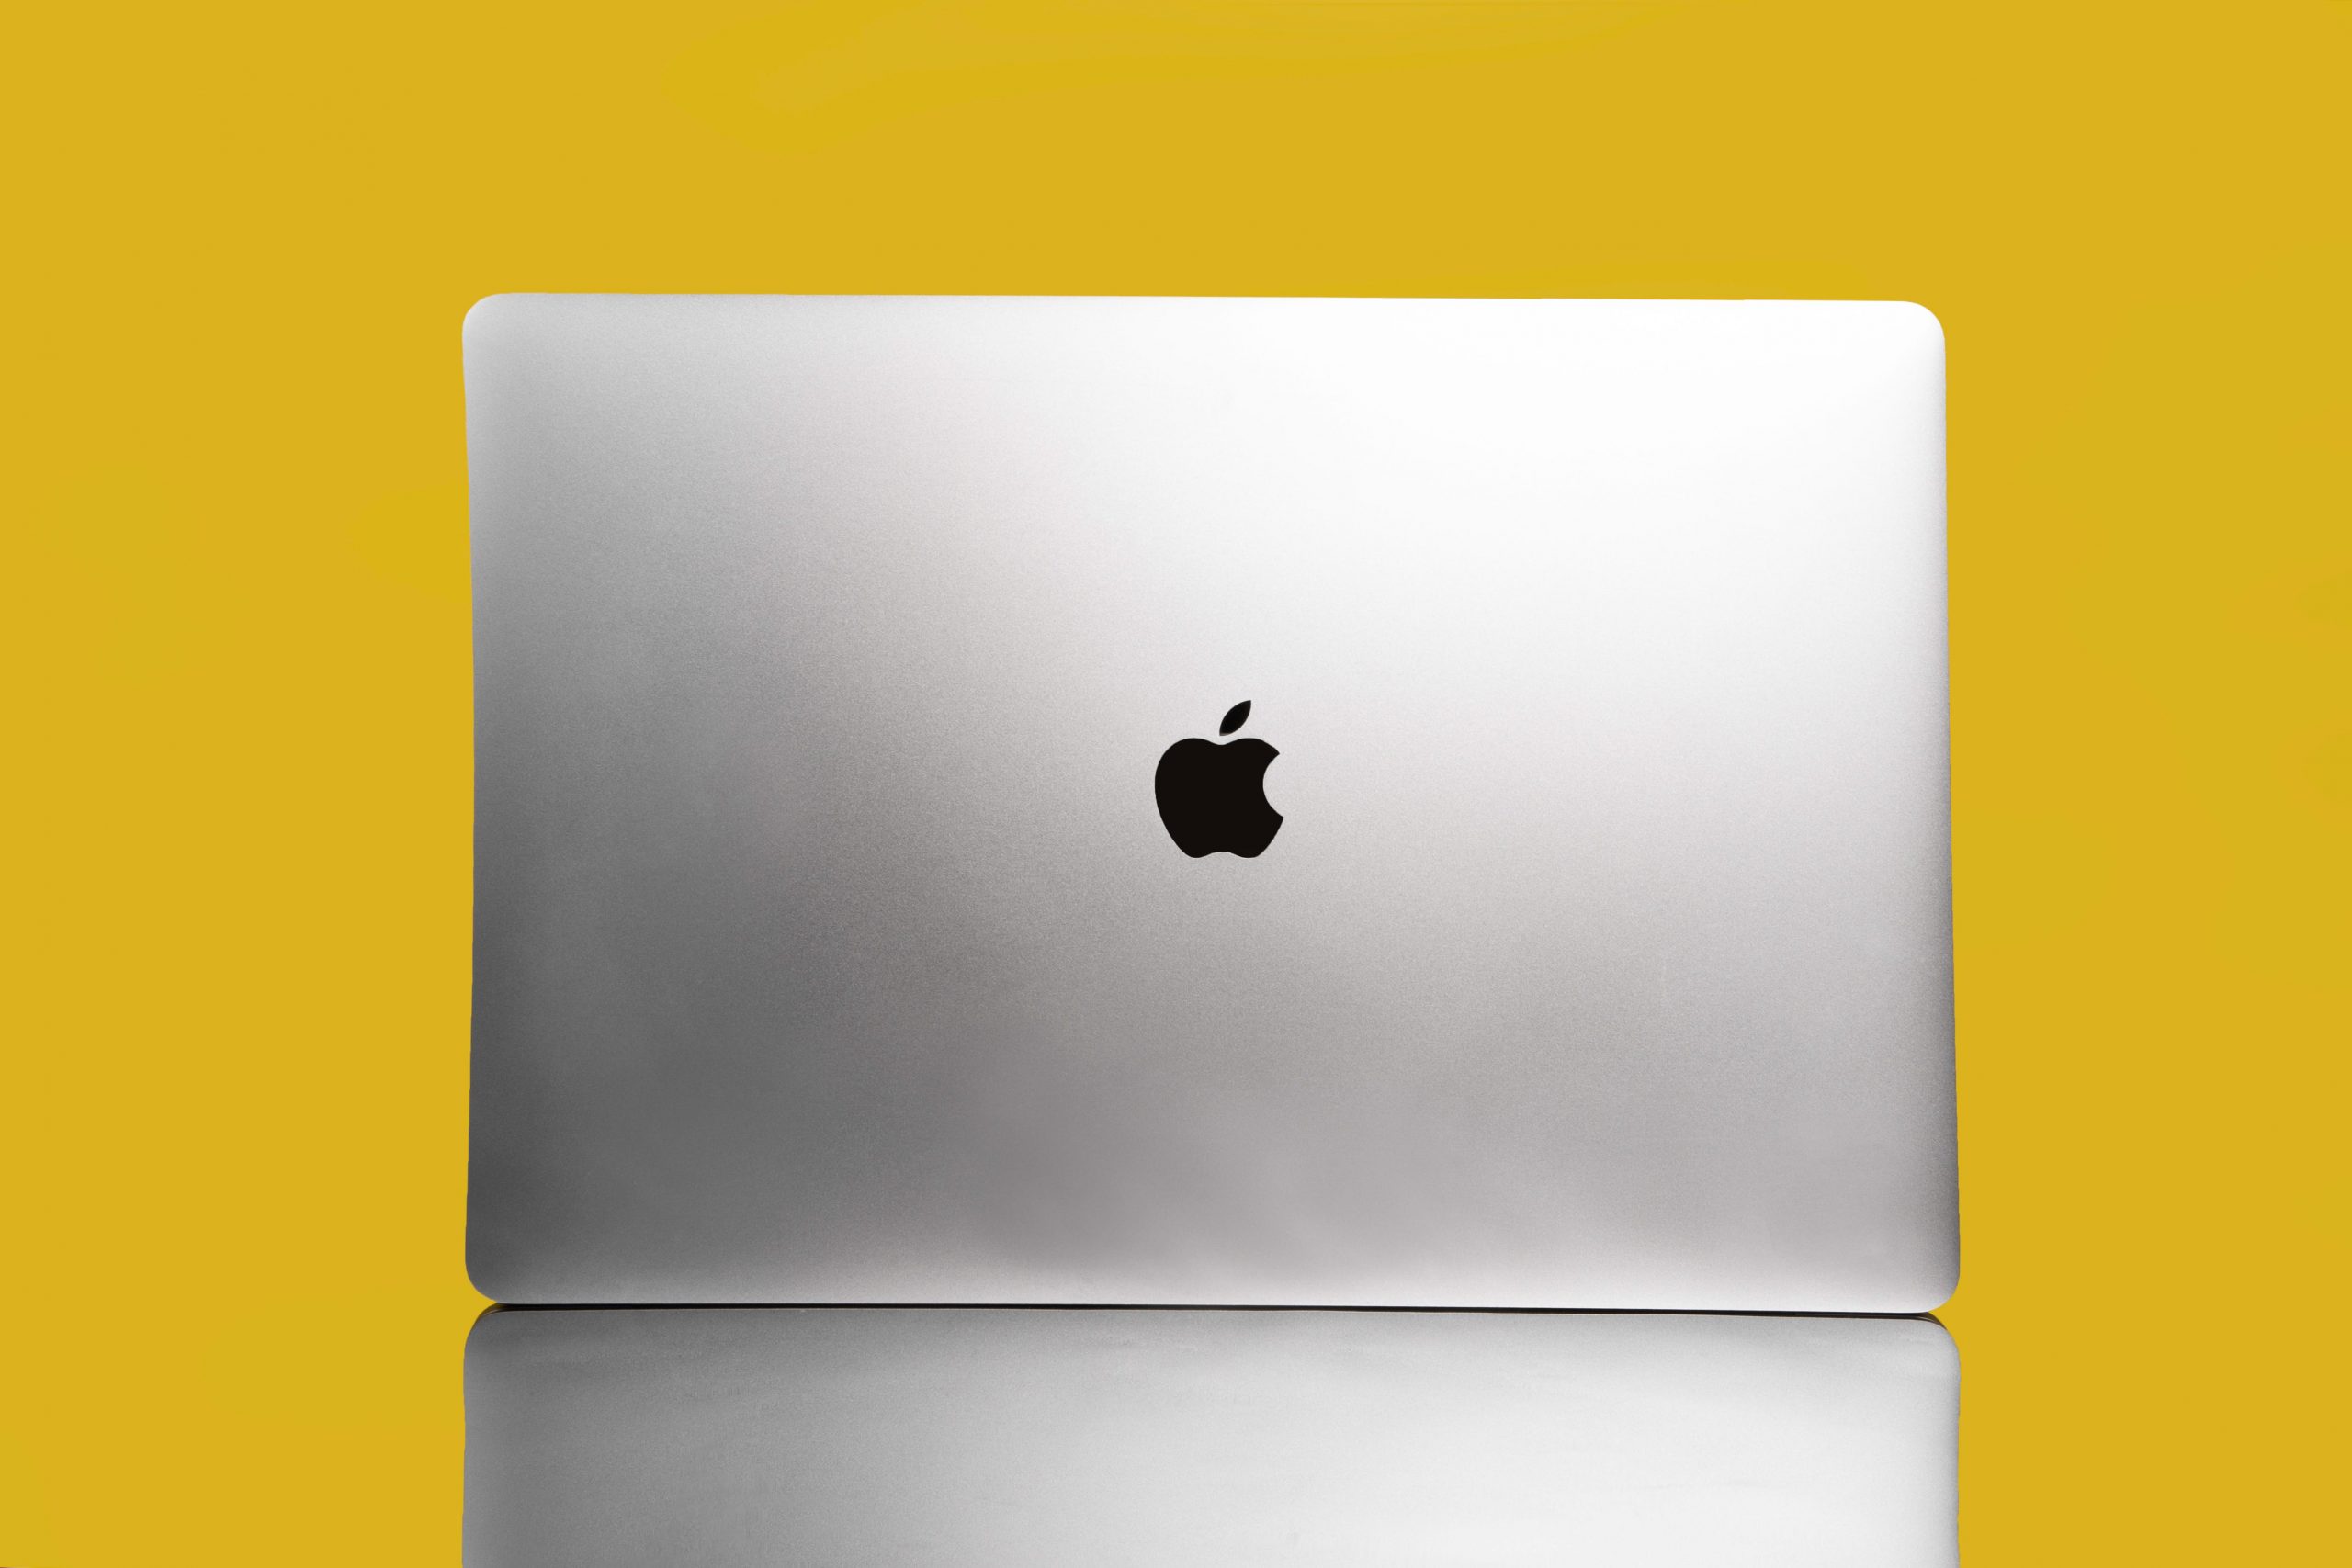 Apple's 16-inch MacBook Pro